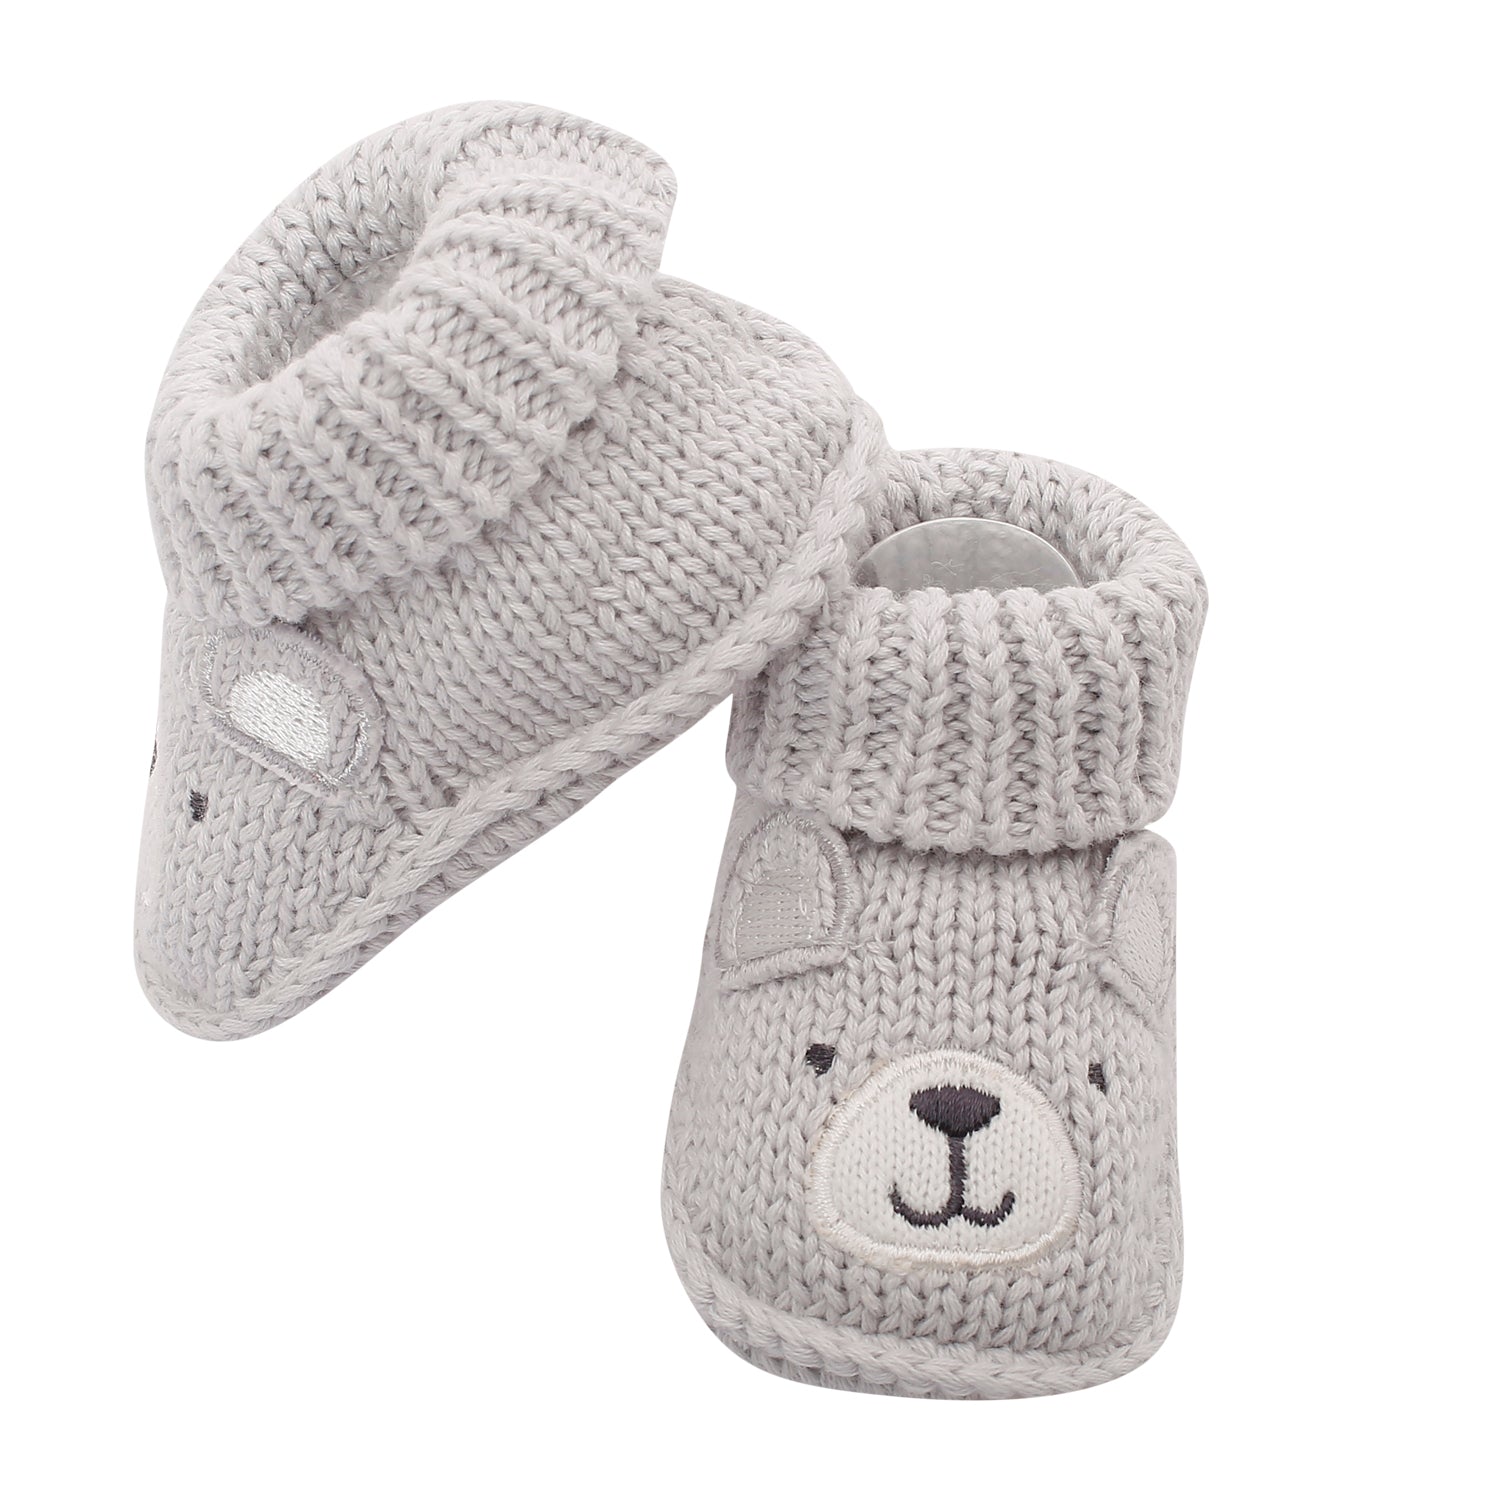 Bff Bear Grey Socks Booties - Baby Moo